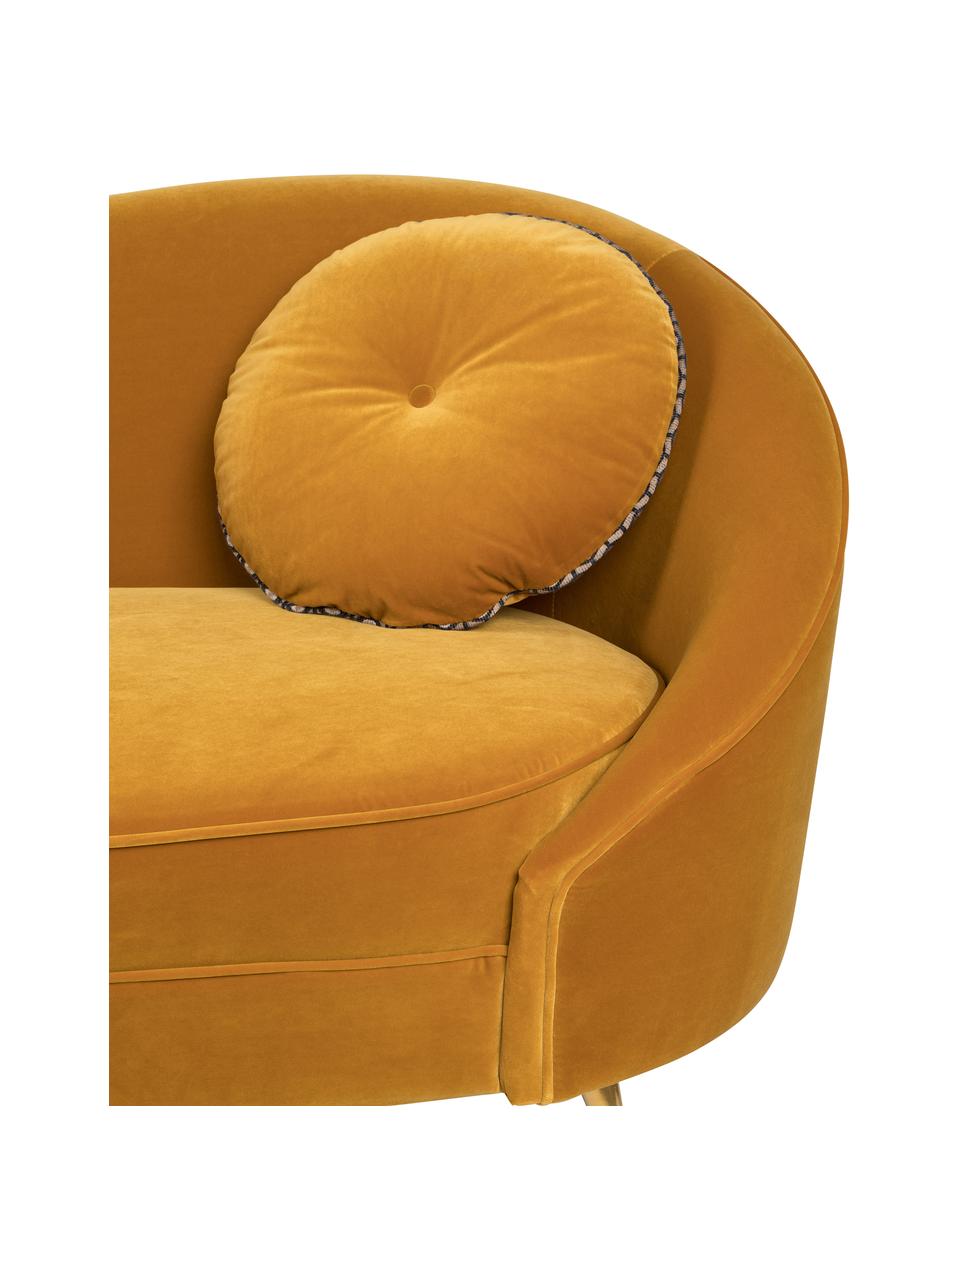 Designer Samt-Sofa I Am Not A Croissant (2-Sitzer) in Gelb, Bezug: Polyestersamt 30 000 Sche, Füße: Edelstahl, beschichtet, Rahmen: Sperrholz, Samt Ockergelb, B 168 x H 76 cm